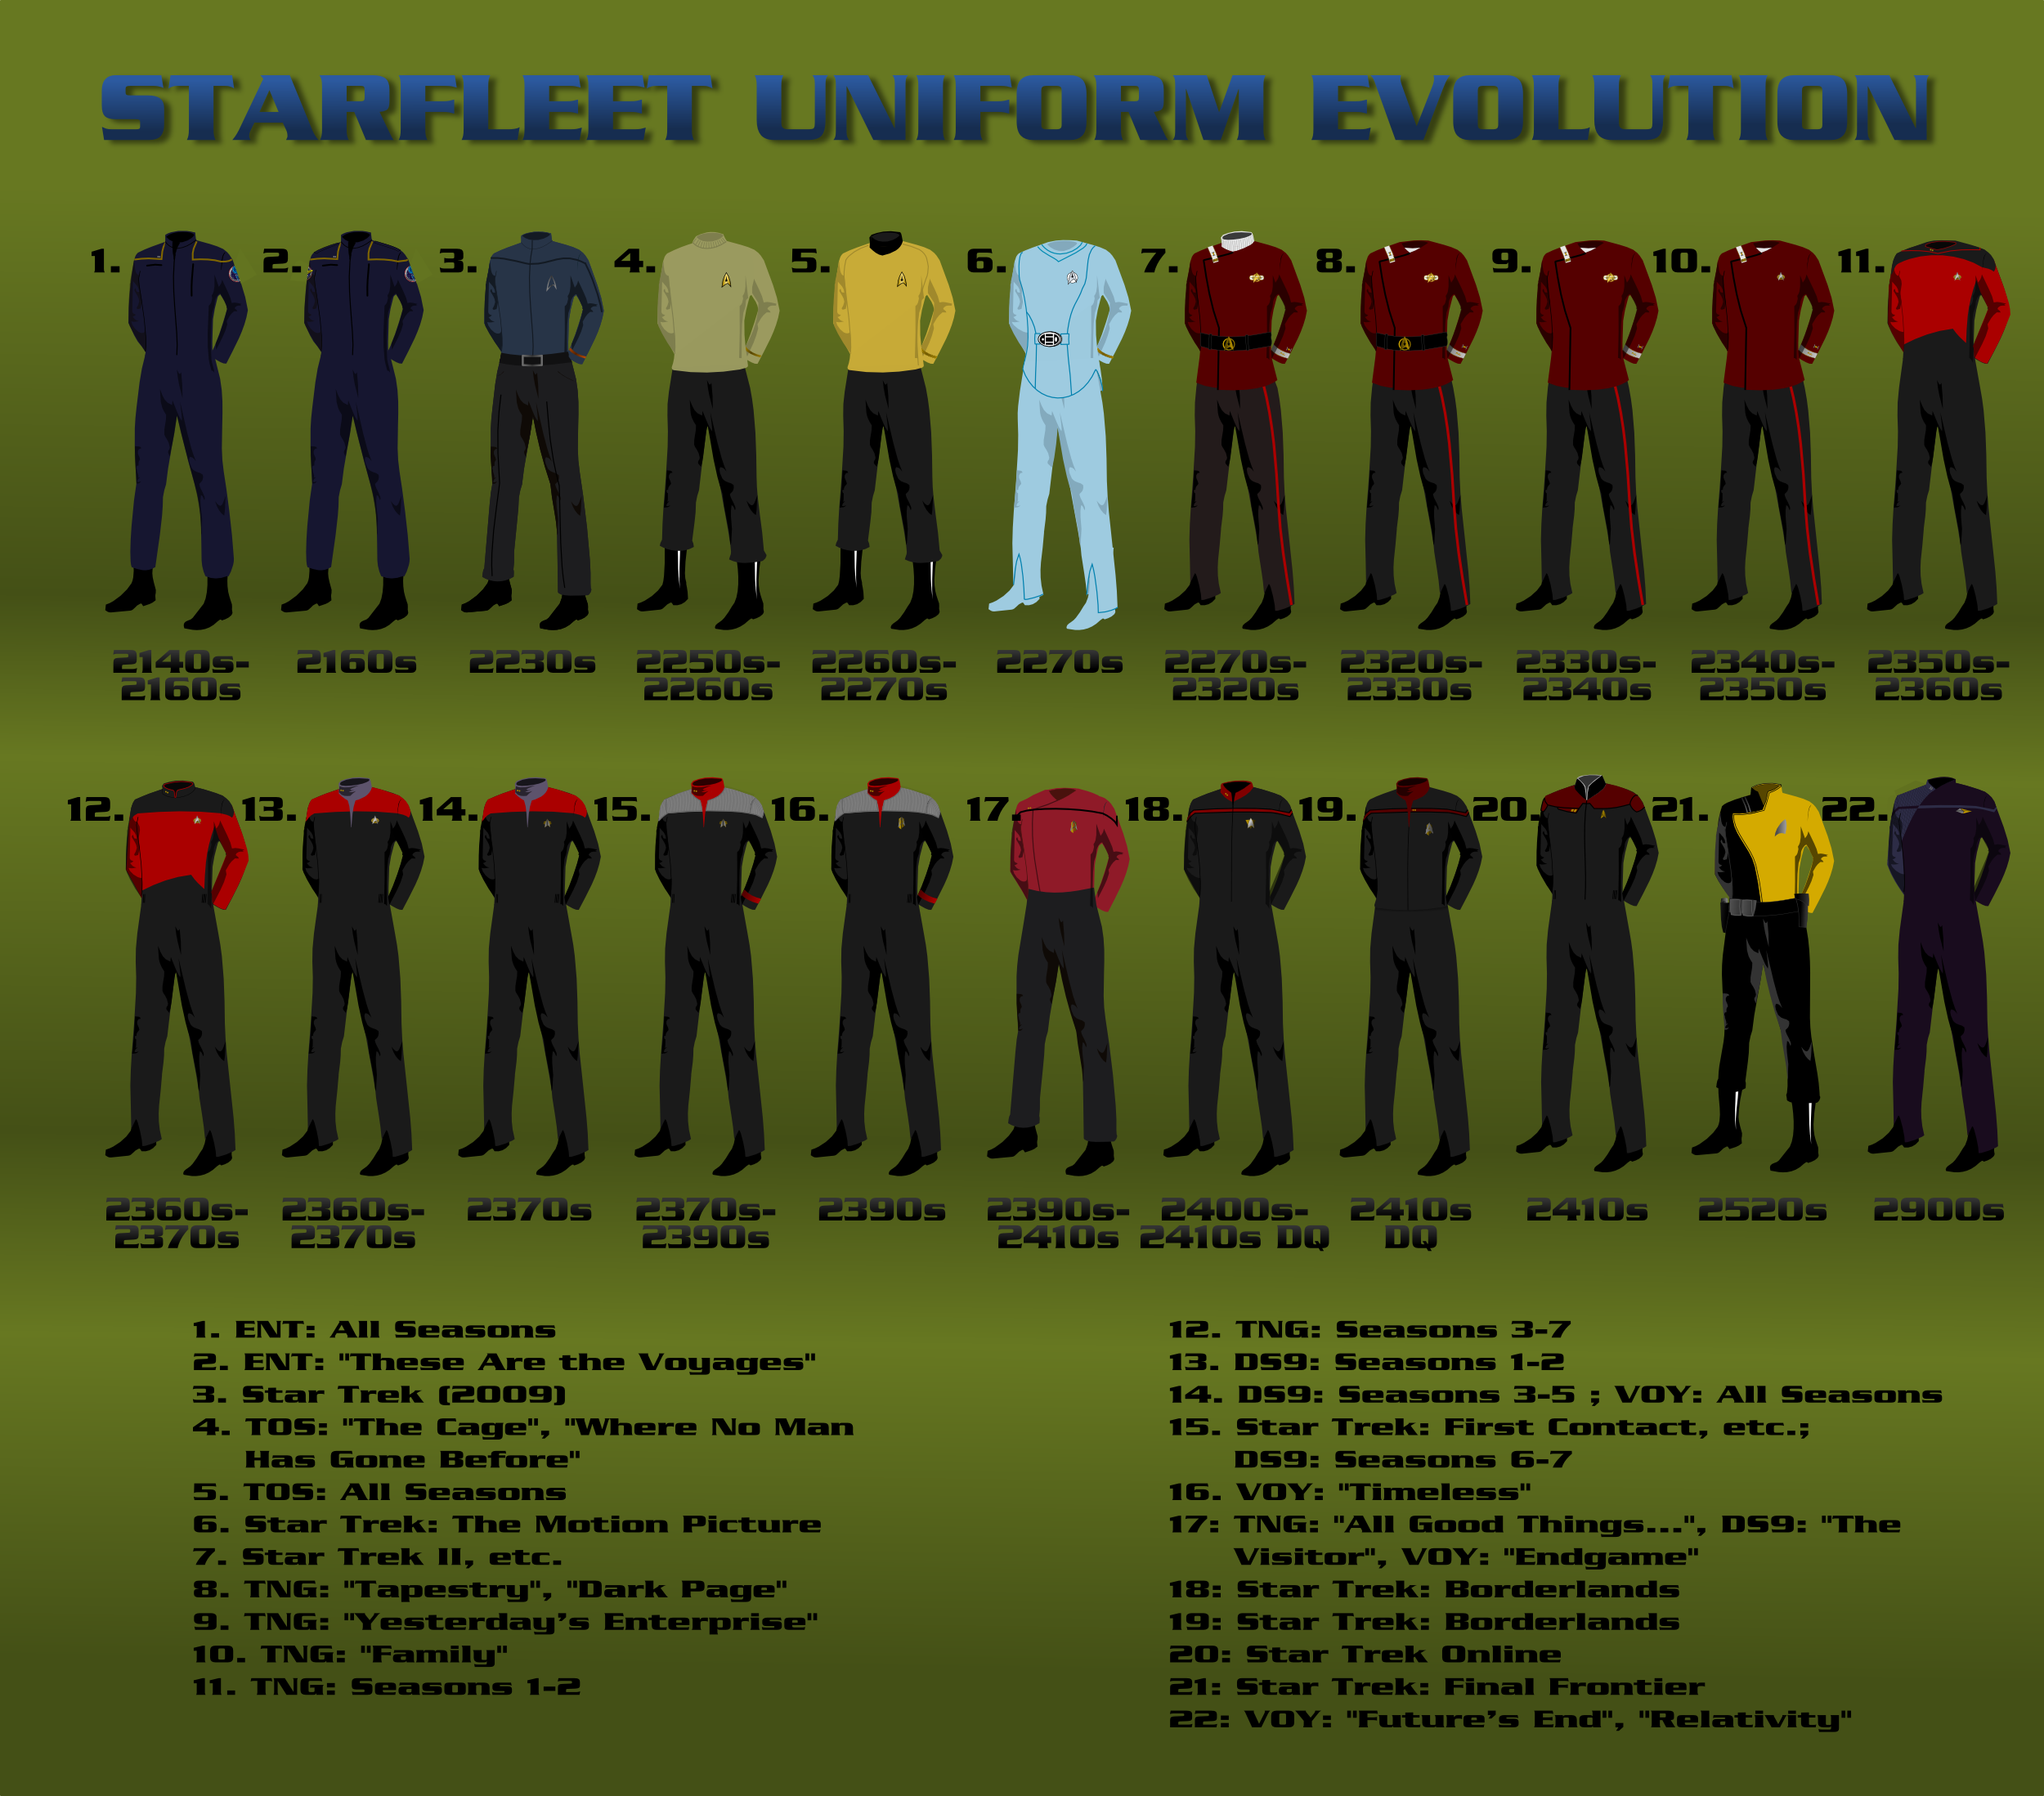 Star Fleet Uniform 67